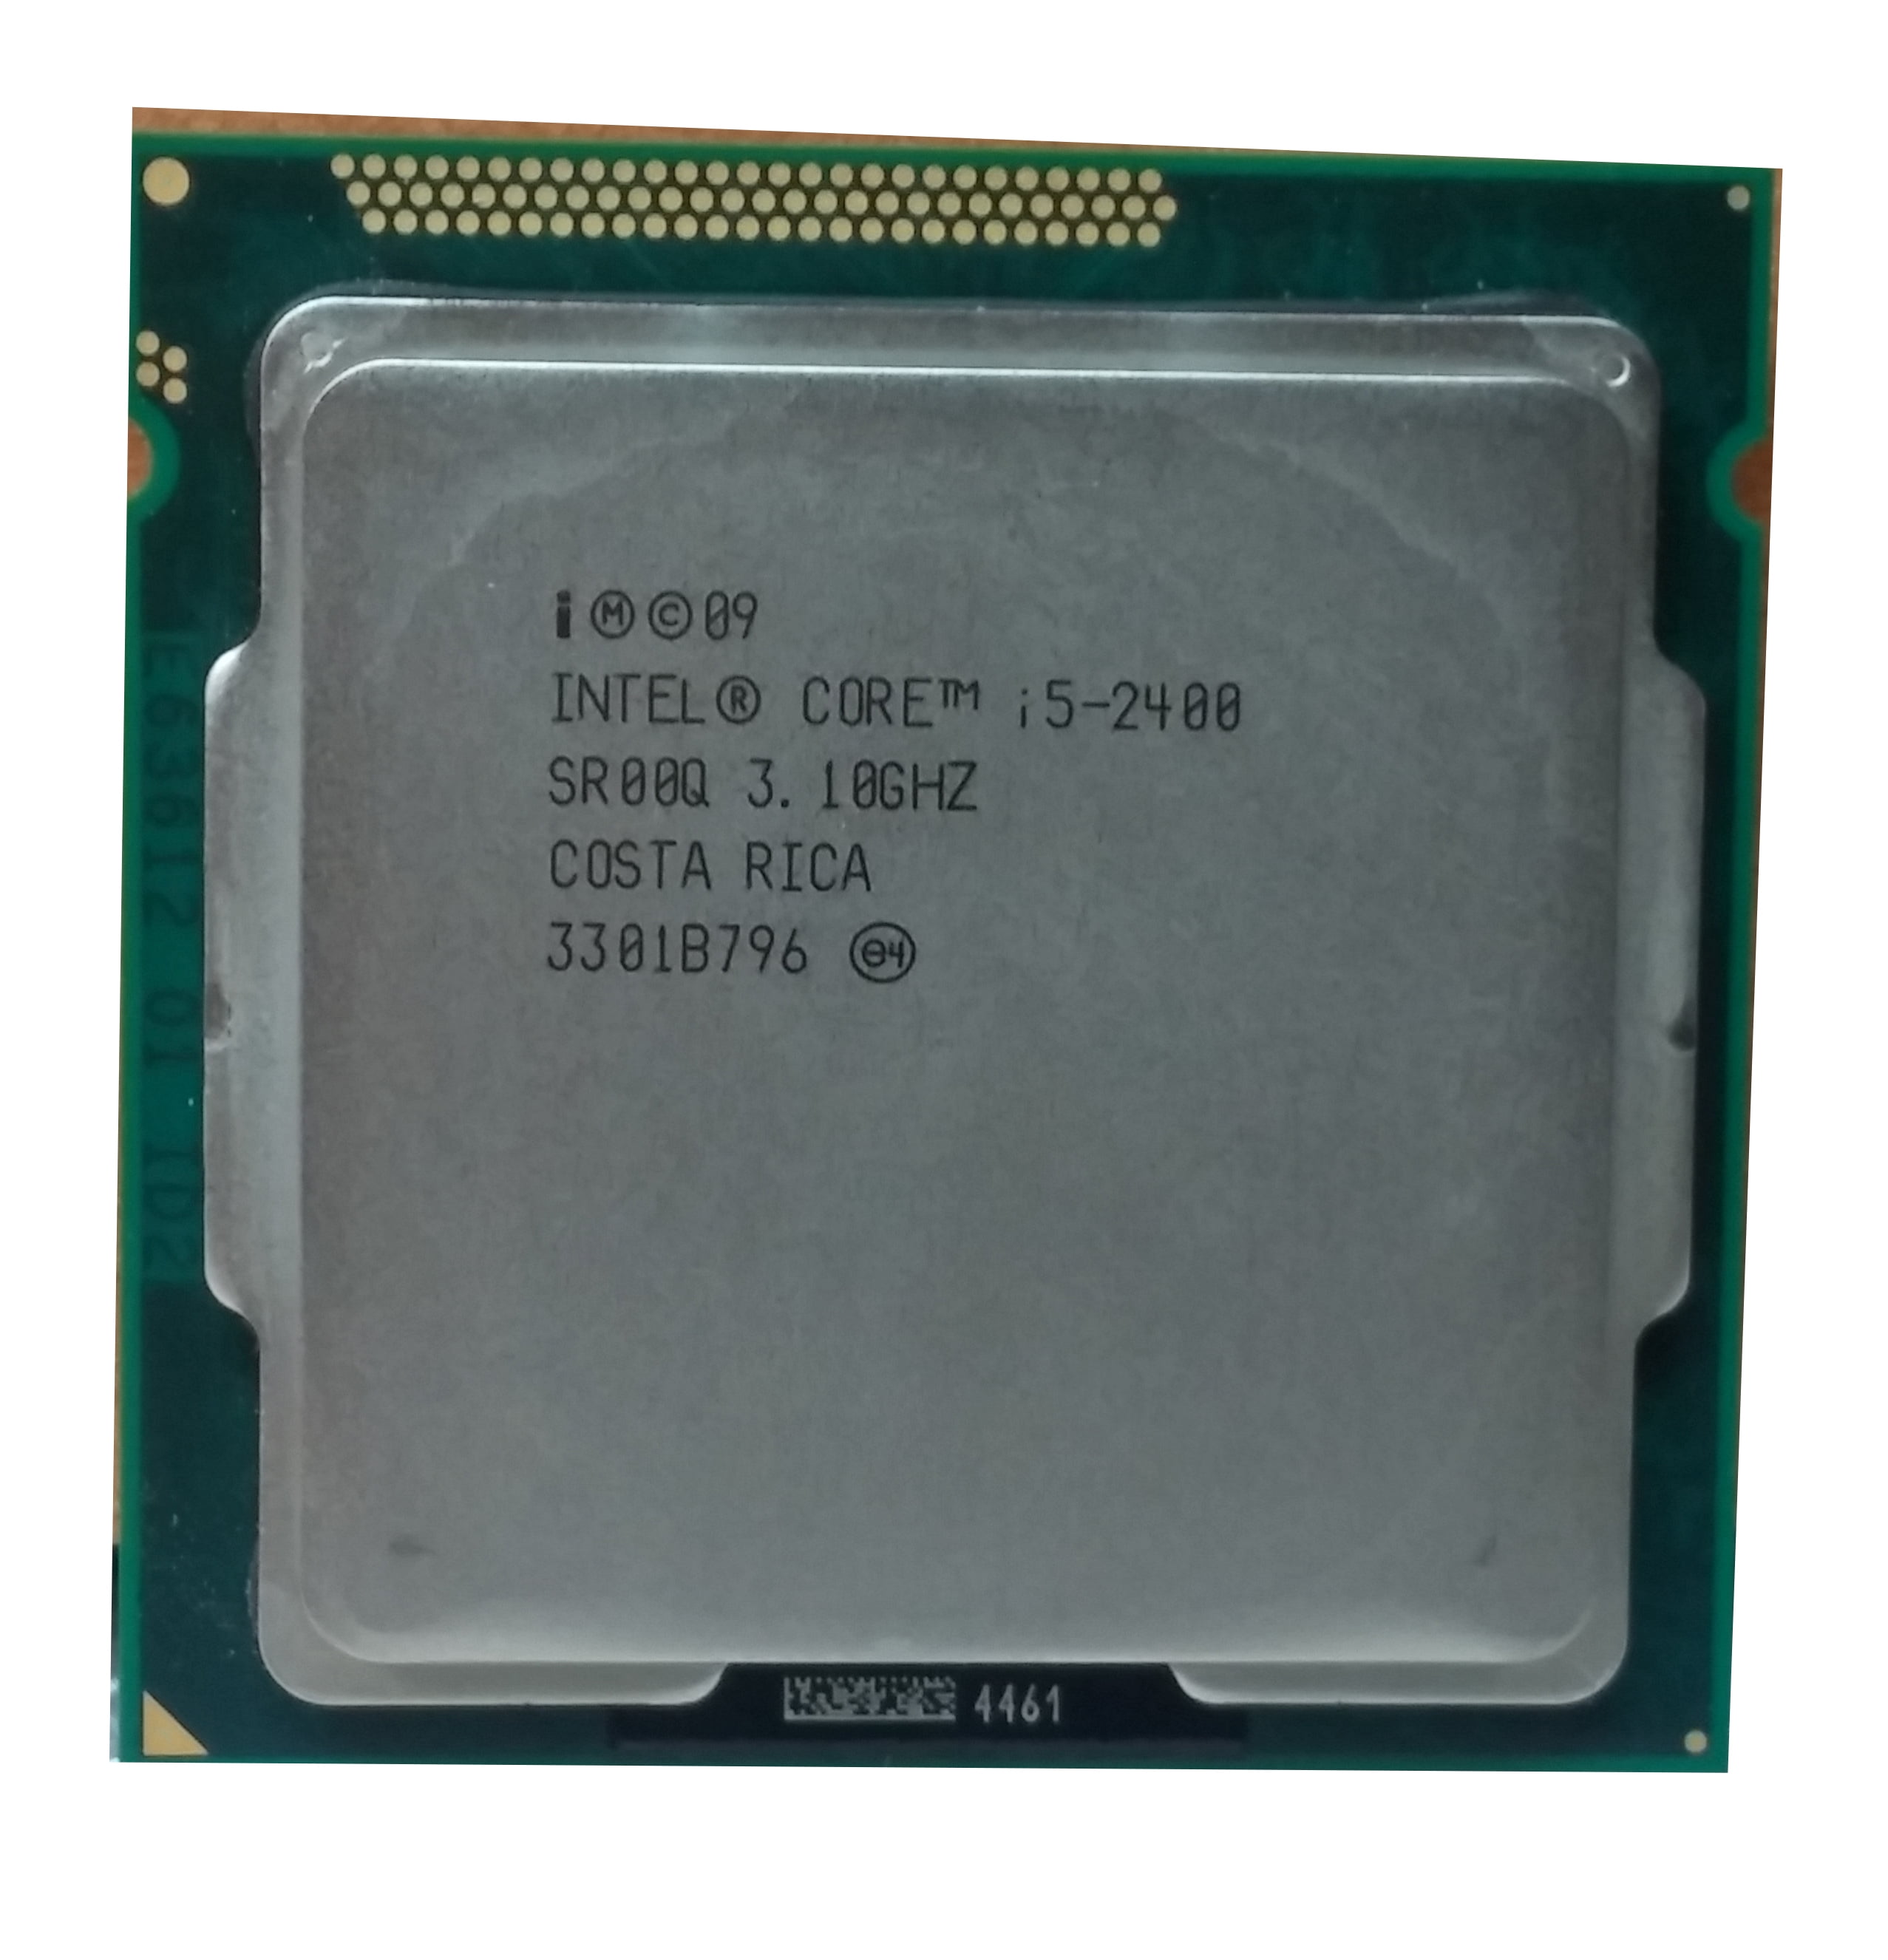 Интел i5 2400. Intel i5-2400 1155 LGA. Процессор Intel Core i5 2400. Intel Core i5 @ 3.10GHZ. Процессор i5 2400 LGA 1155.